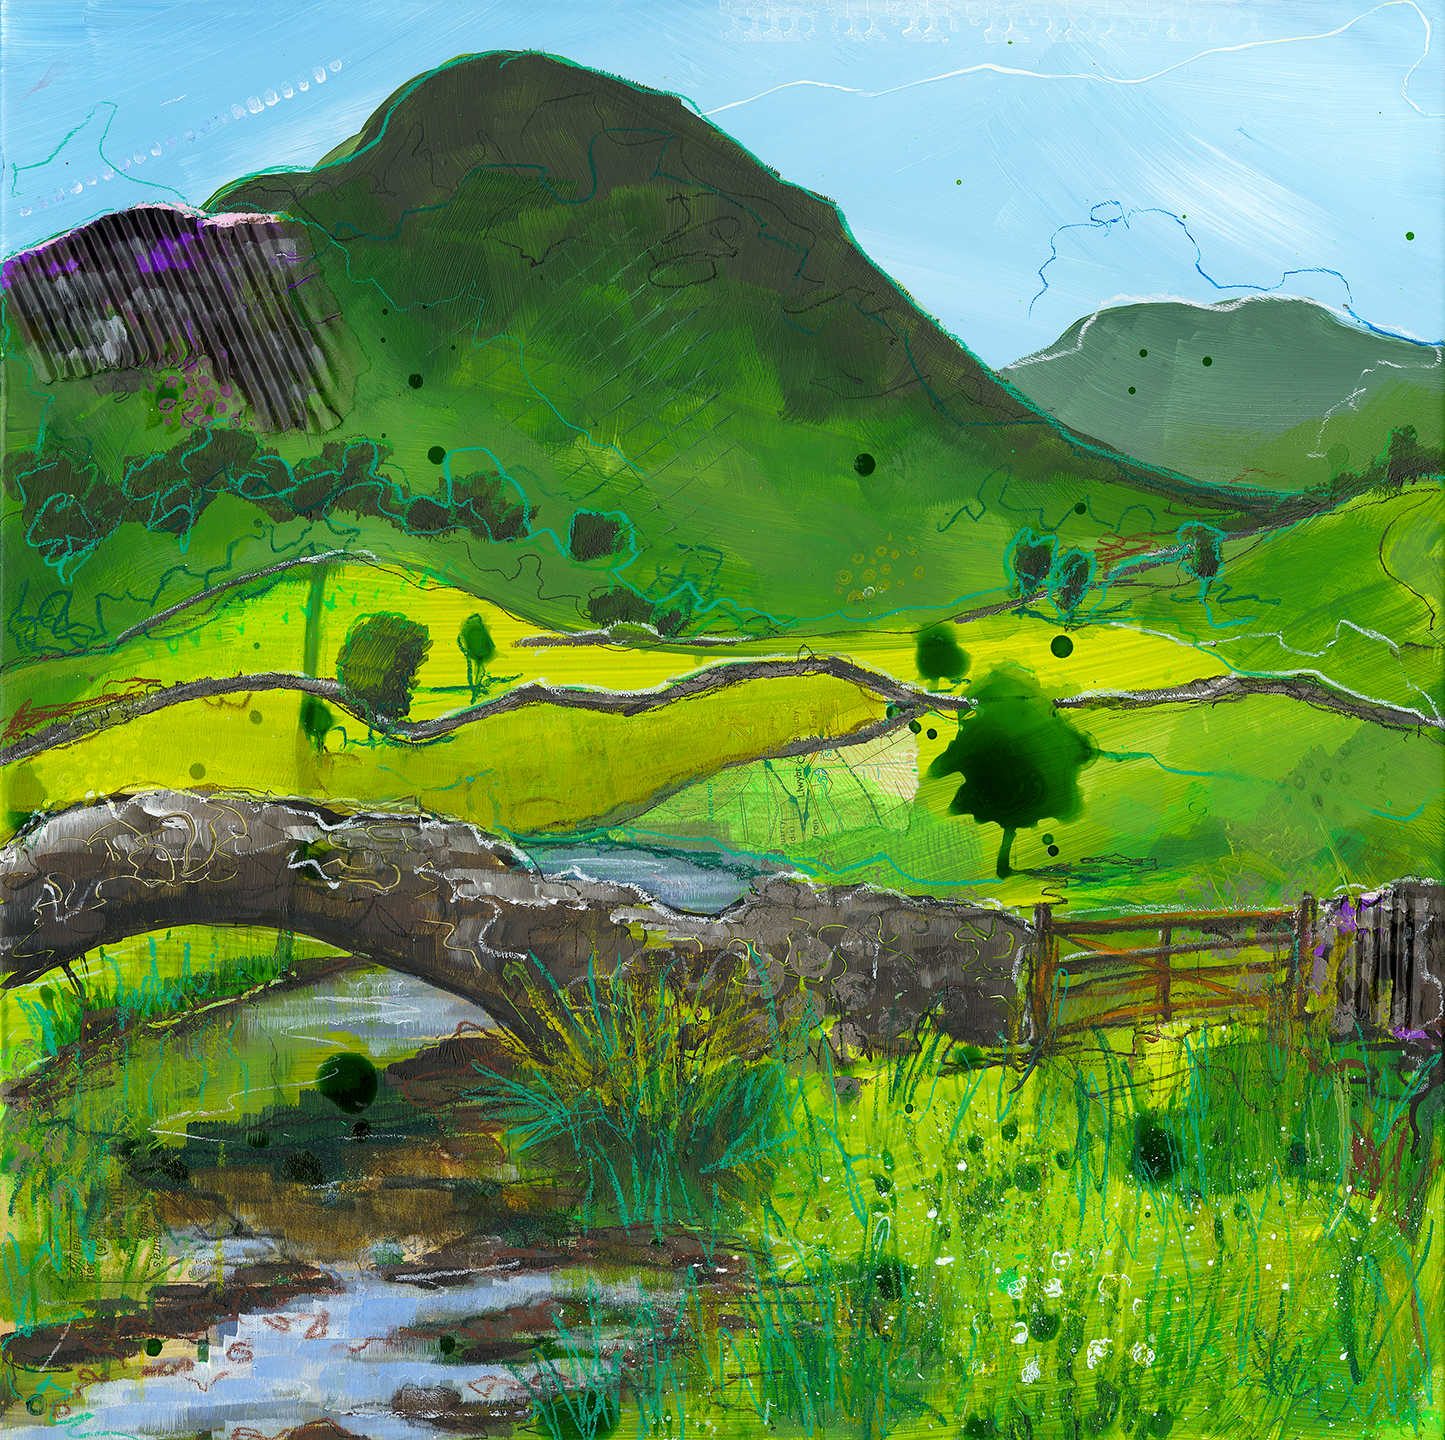 'Countryside Landscape: Quaint Bridge' [Giclée Print]